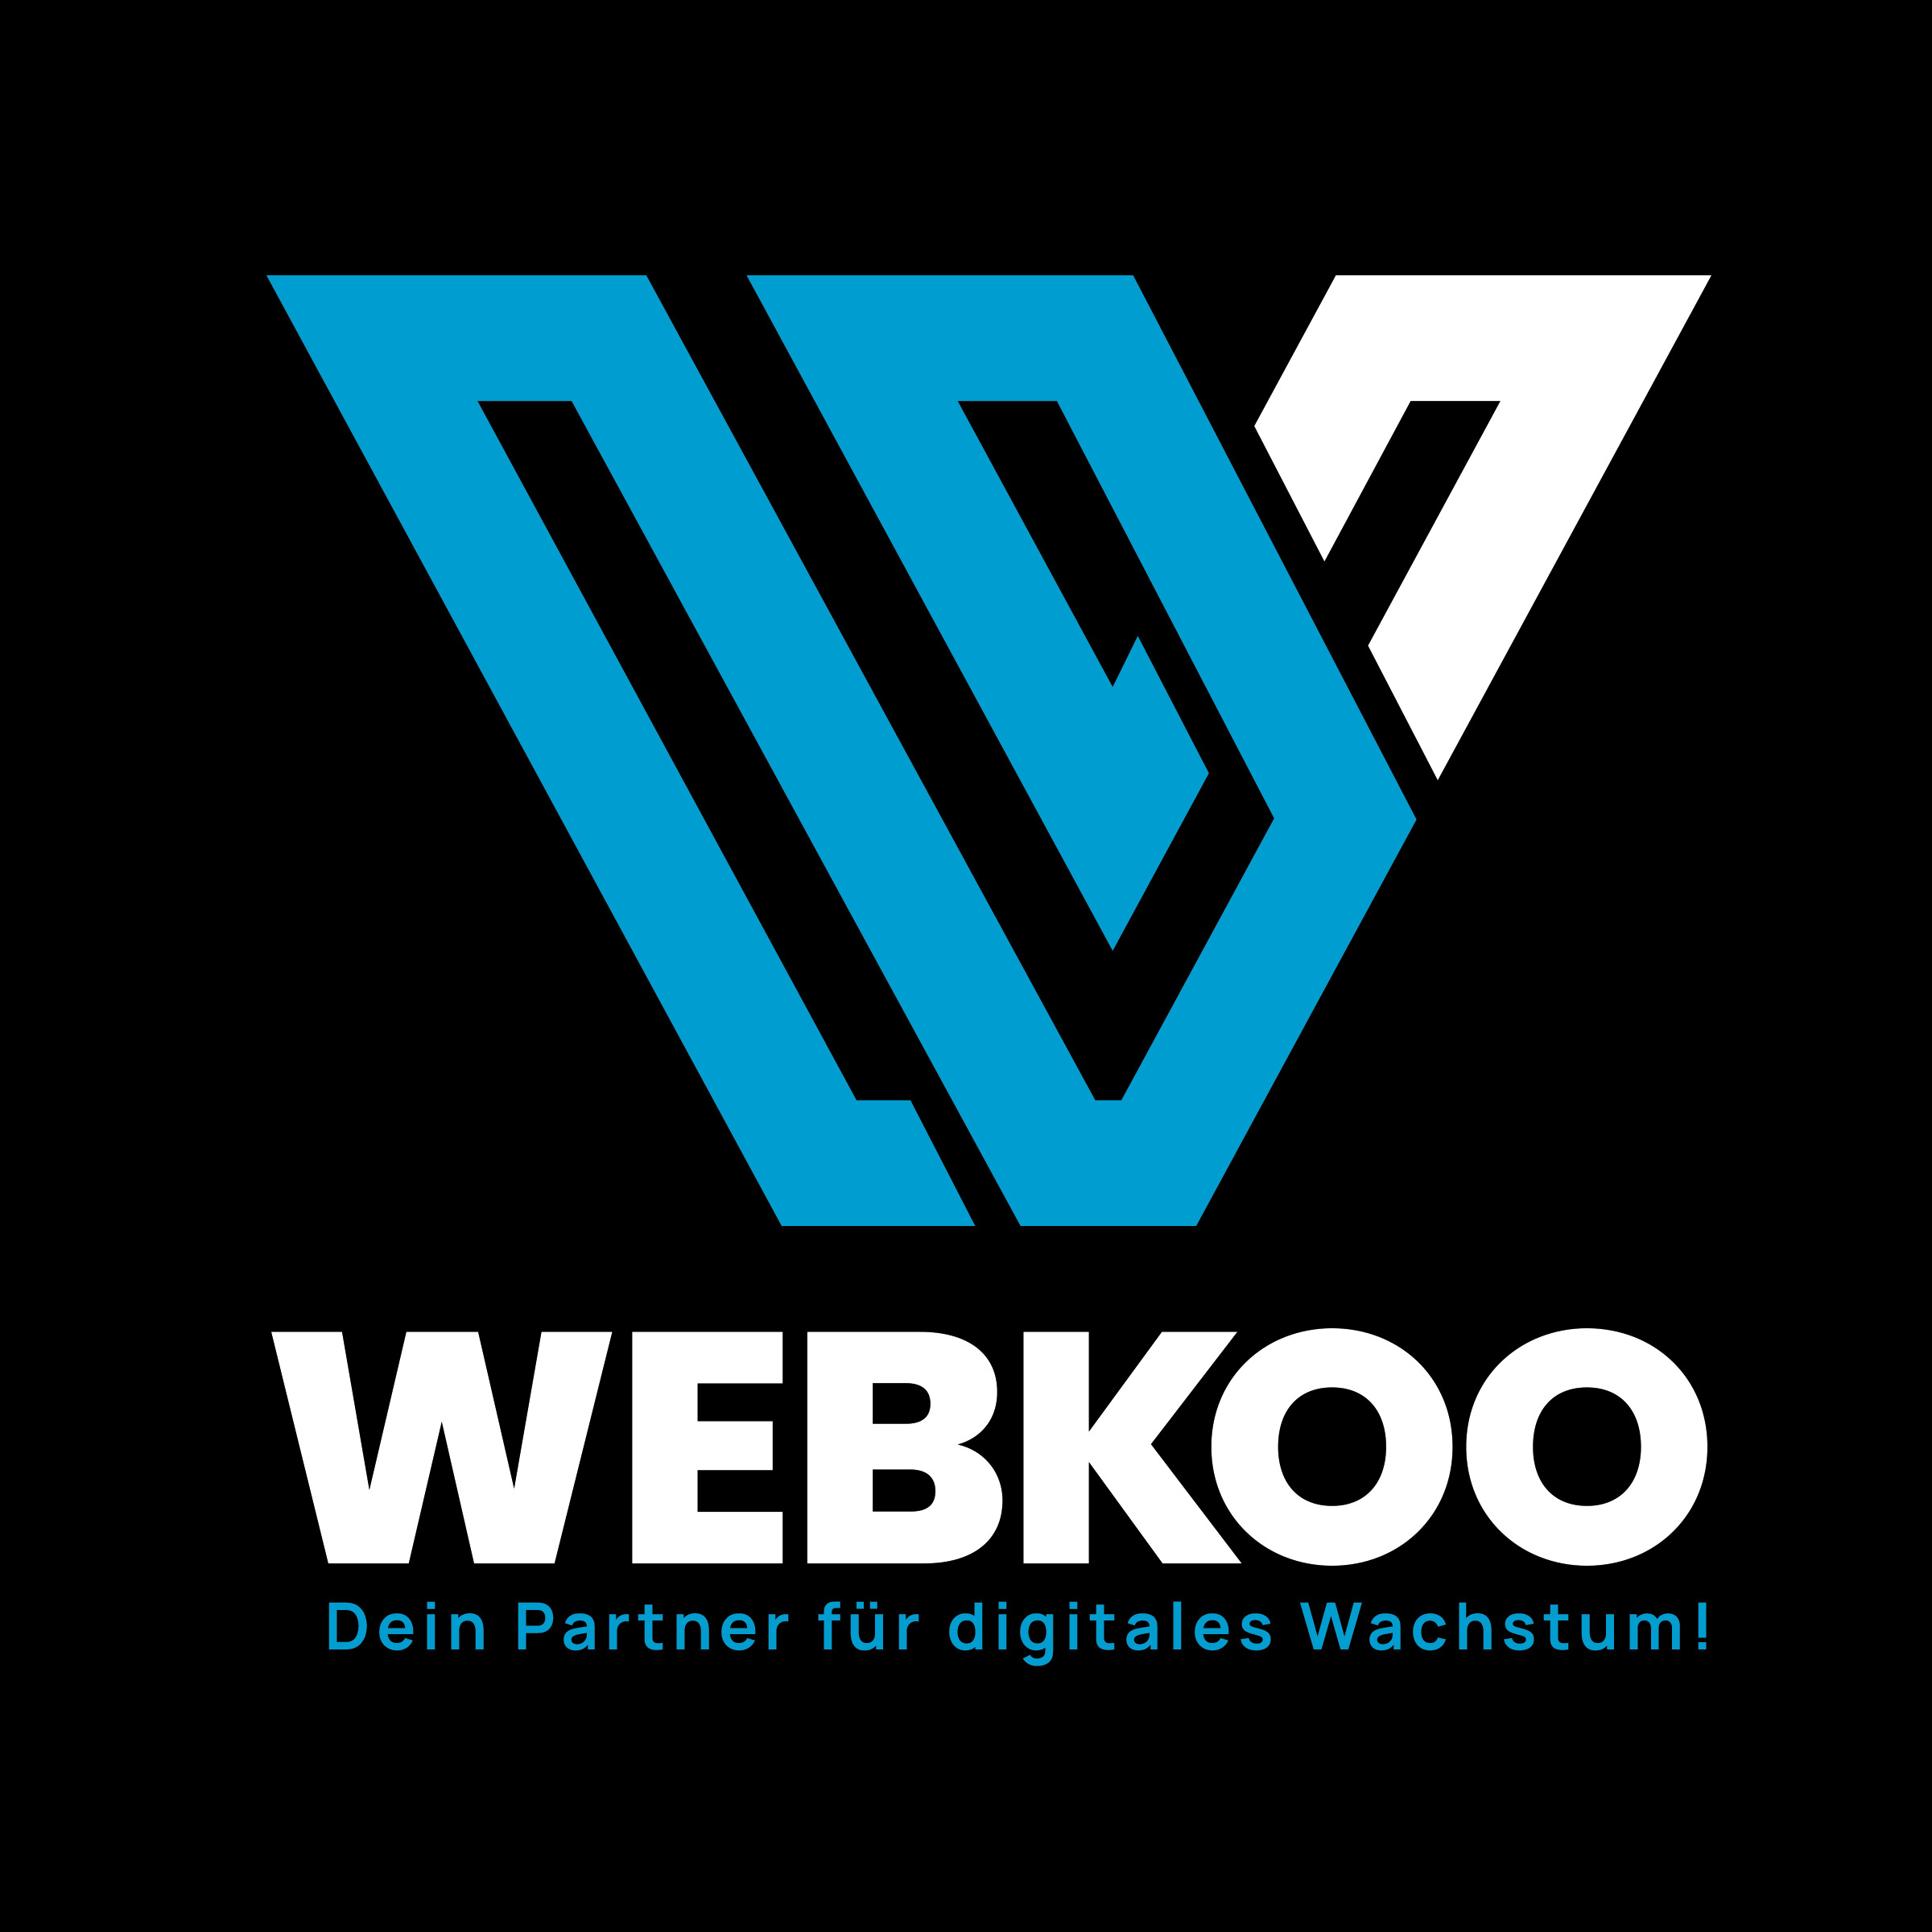 Webkoo - Dein Partner für digitales Wachstum!